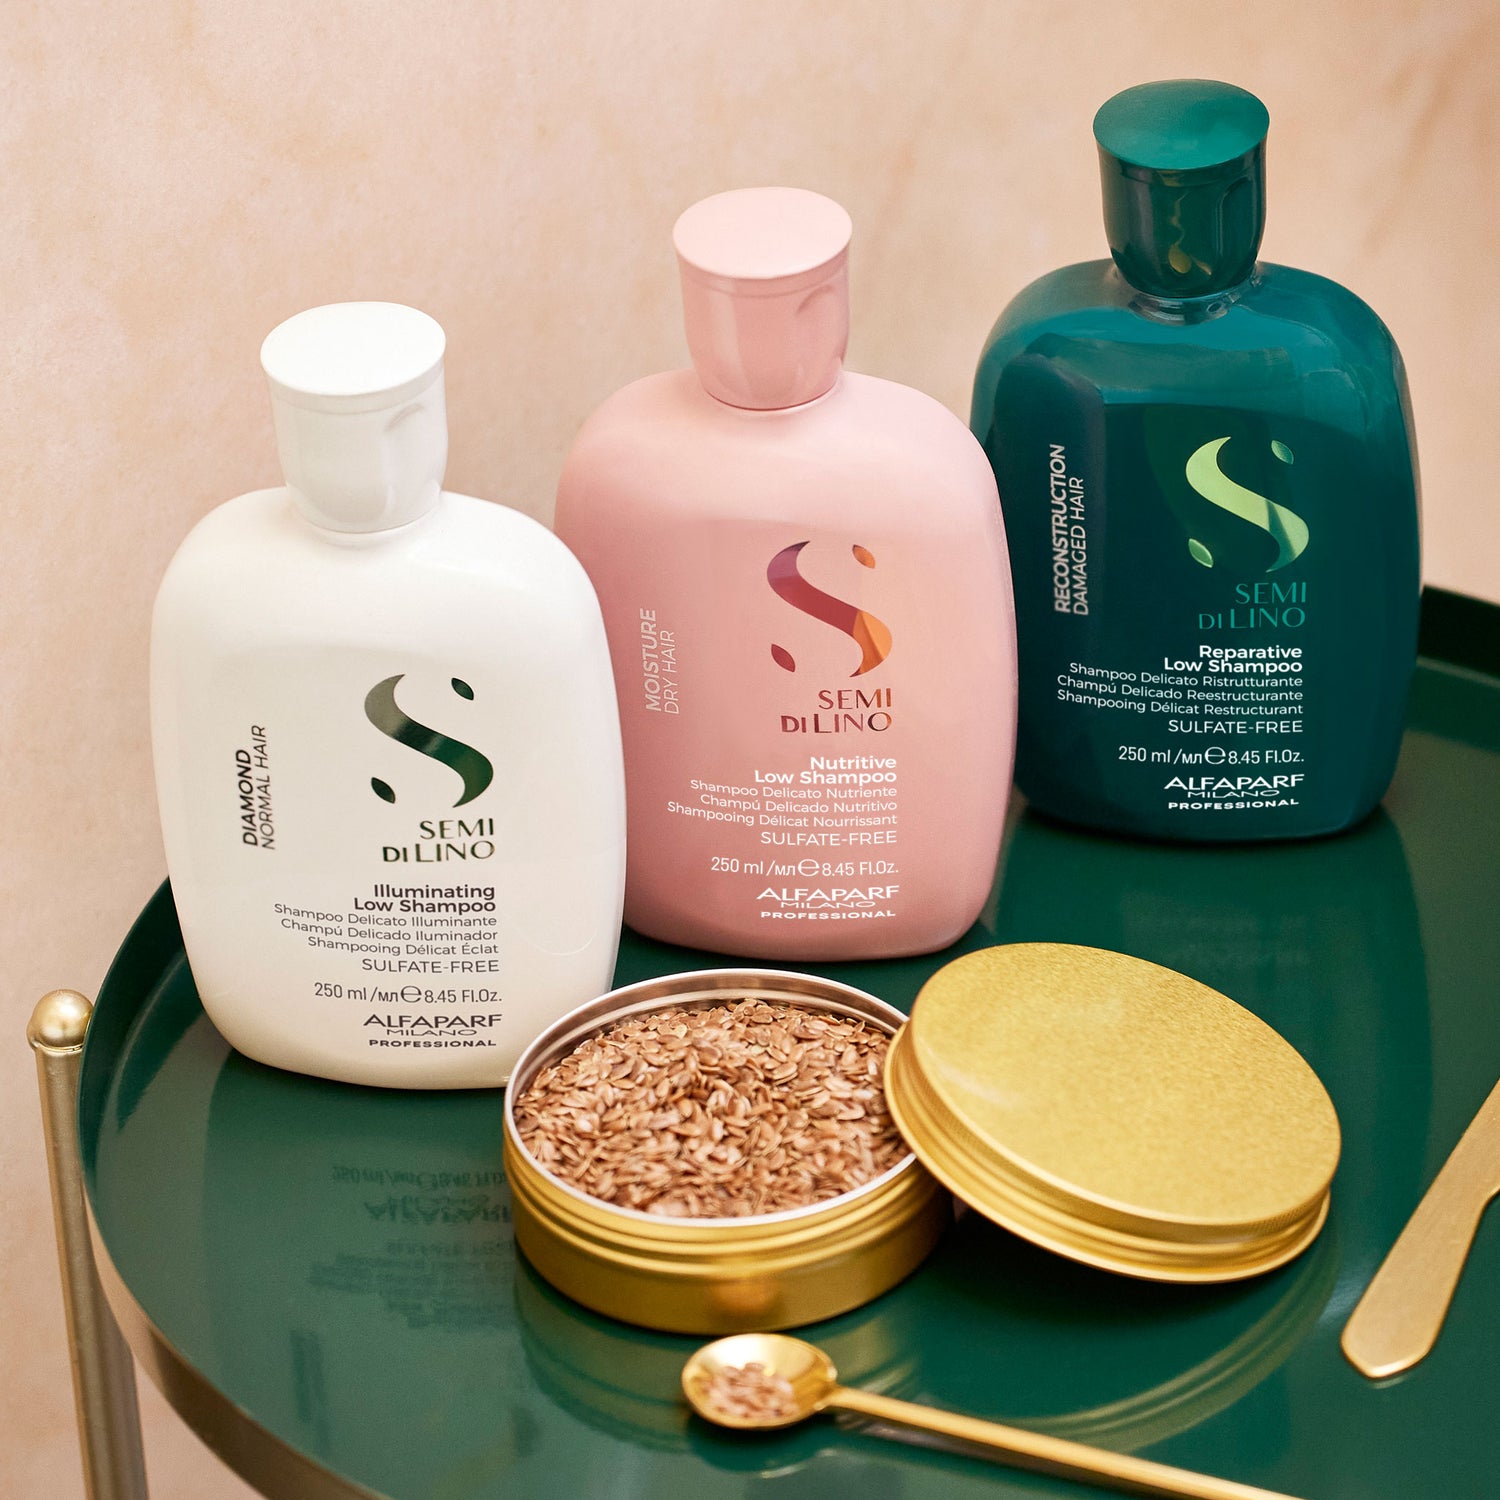 Reparative Sulfate Free Shampoo